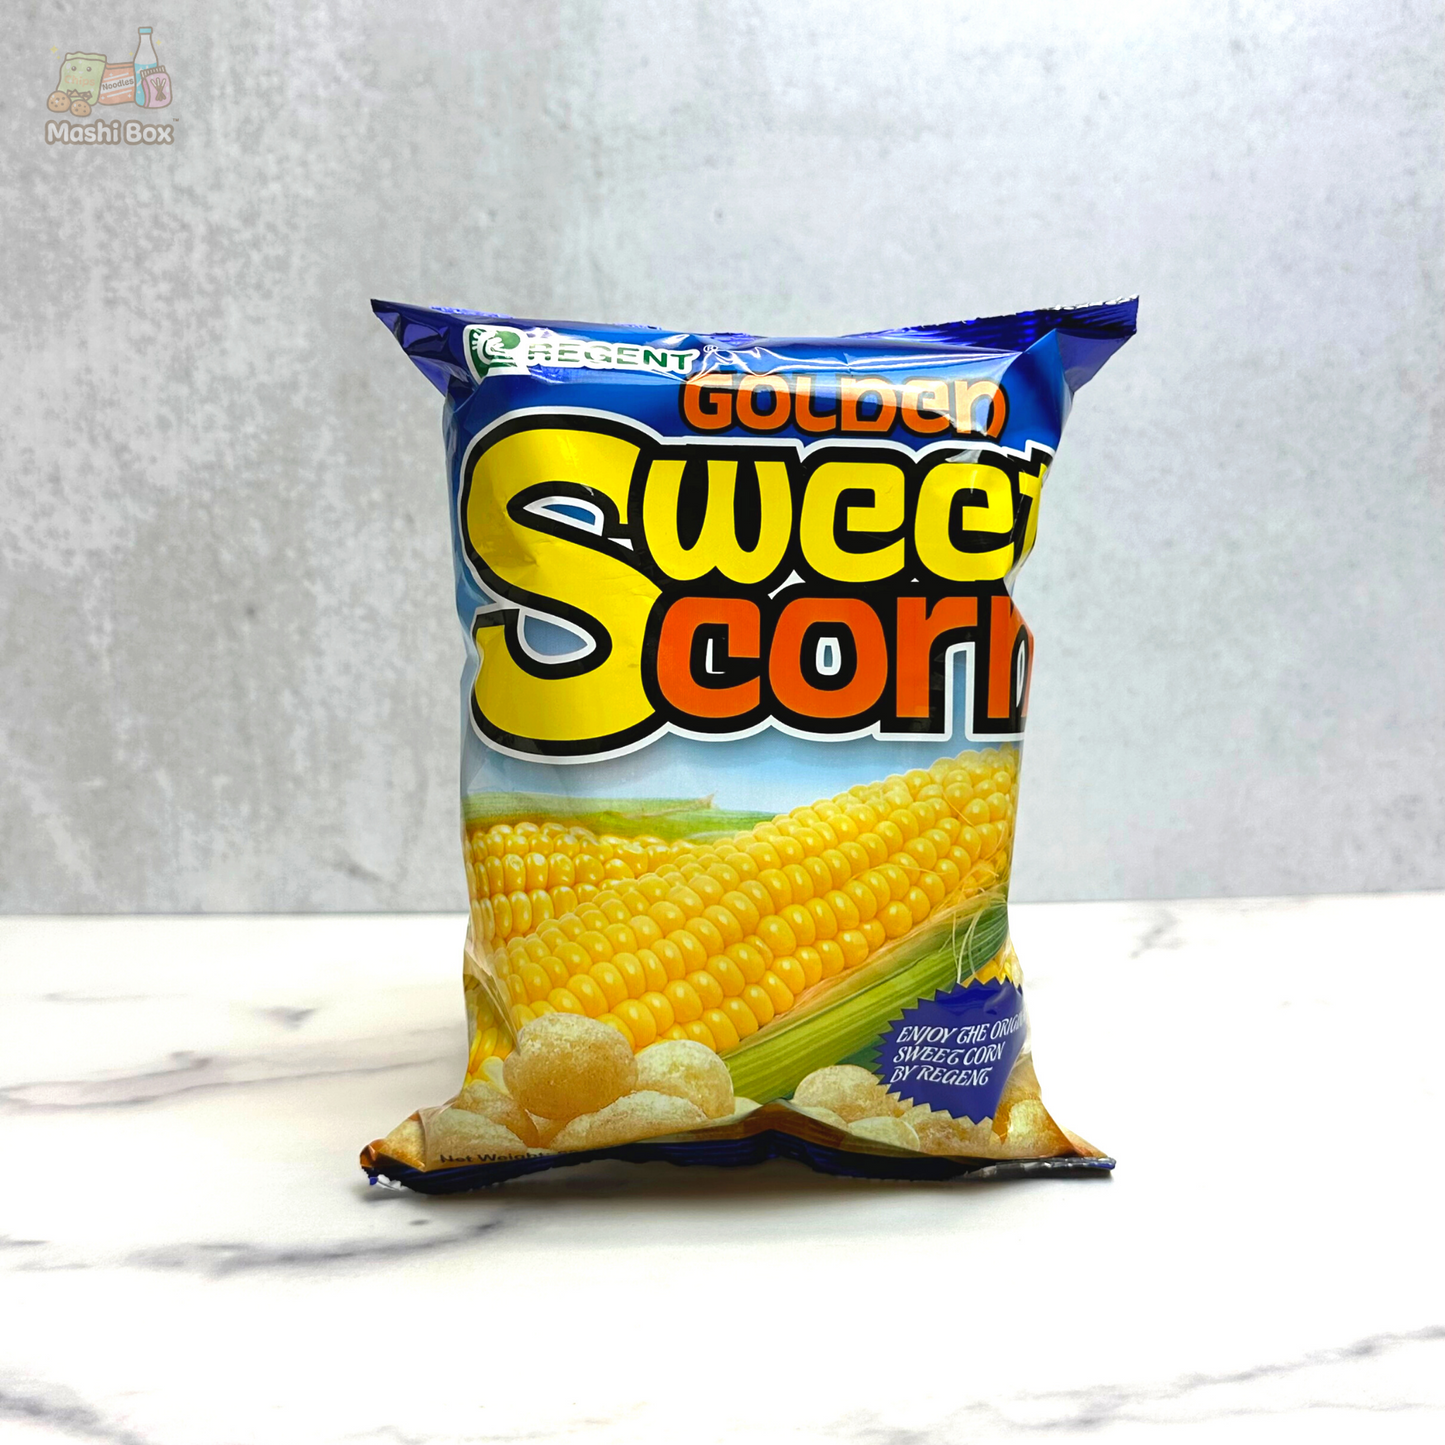 Regent Golden Sweet Corn Puffs